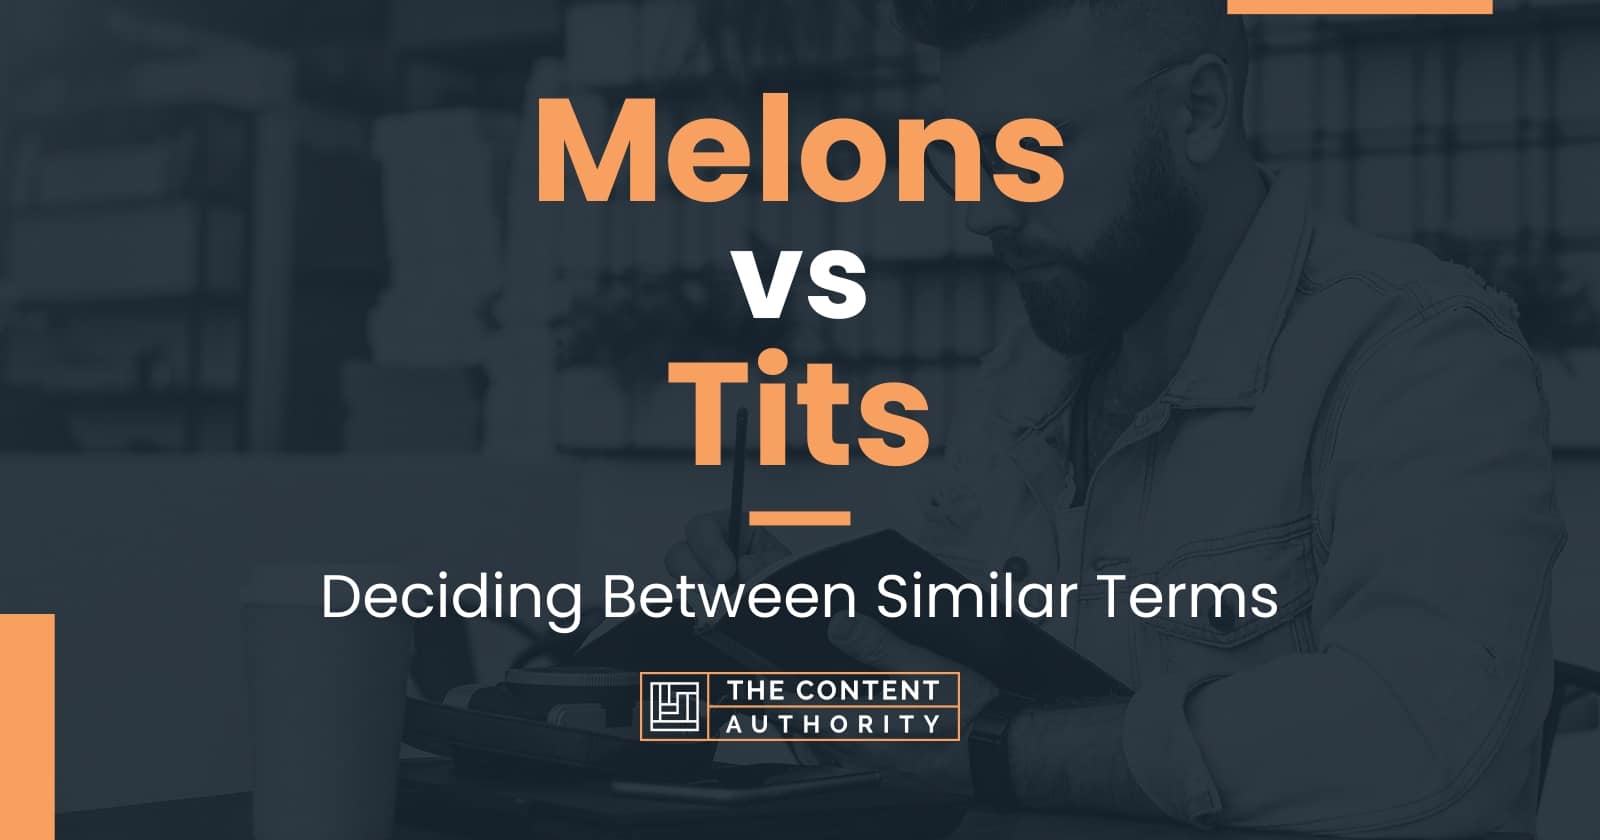 Melons vs Tits: Deciding Between Similar Terms